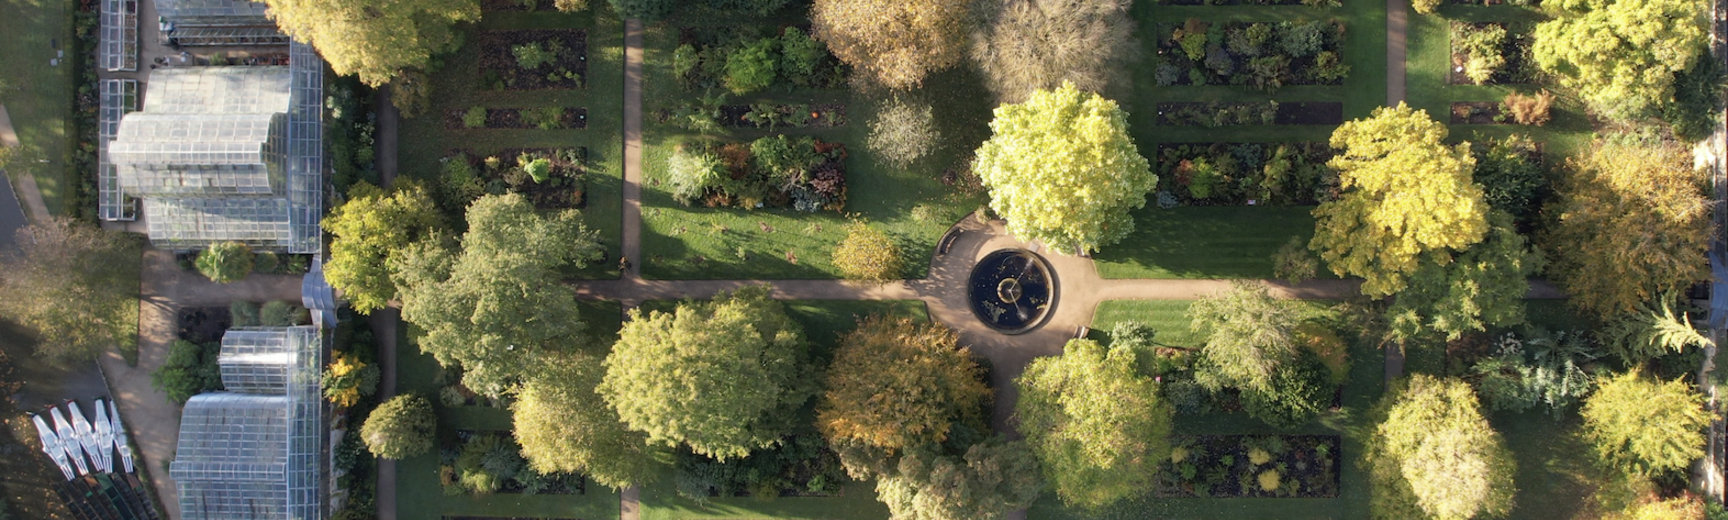 oxford botanic garden autumn 2021 drone